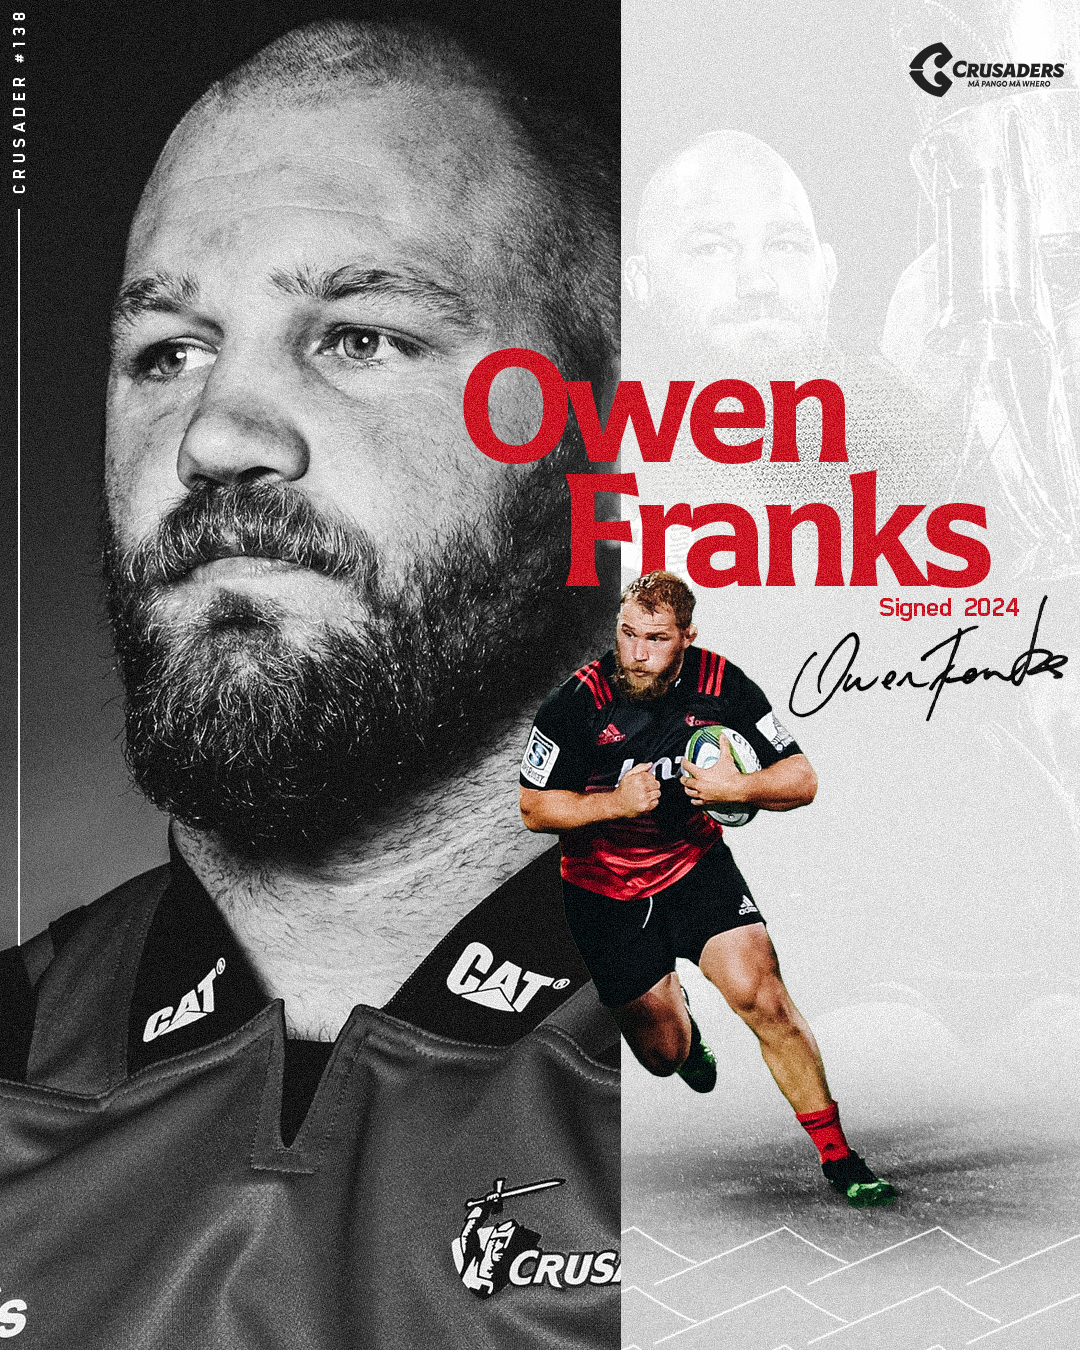 OwenFranks Signed